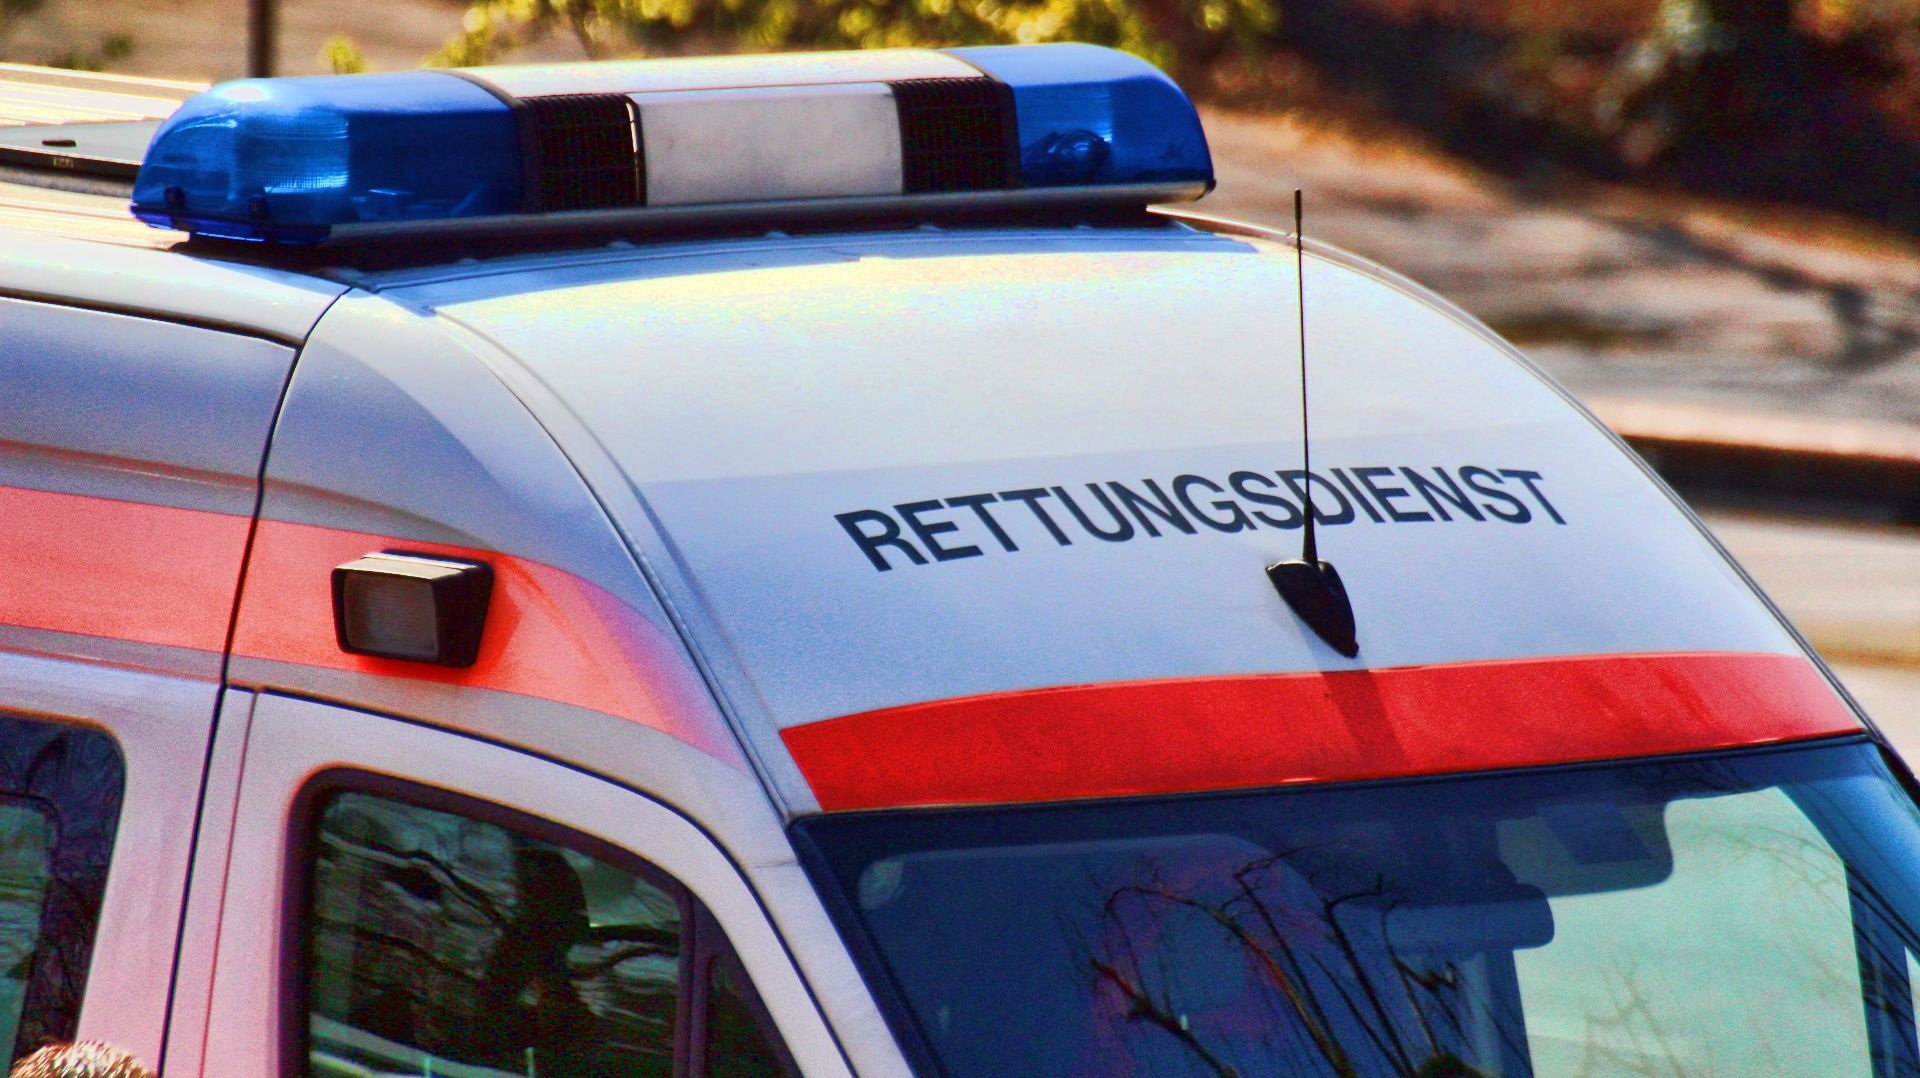 Detailaufnahme eines Blaulichts und der Aufschrift "Rettungsdienst" auf einem Rettungswagen